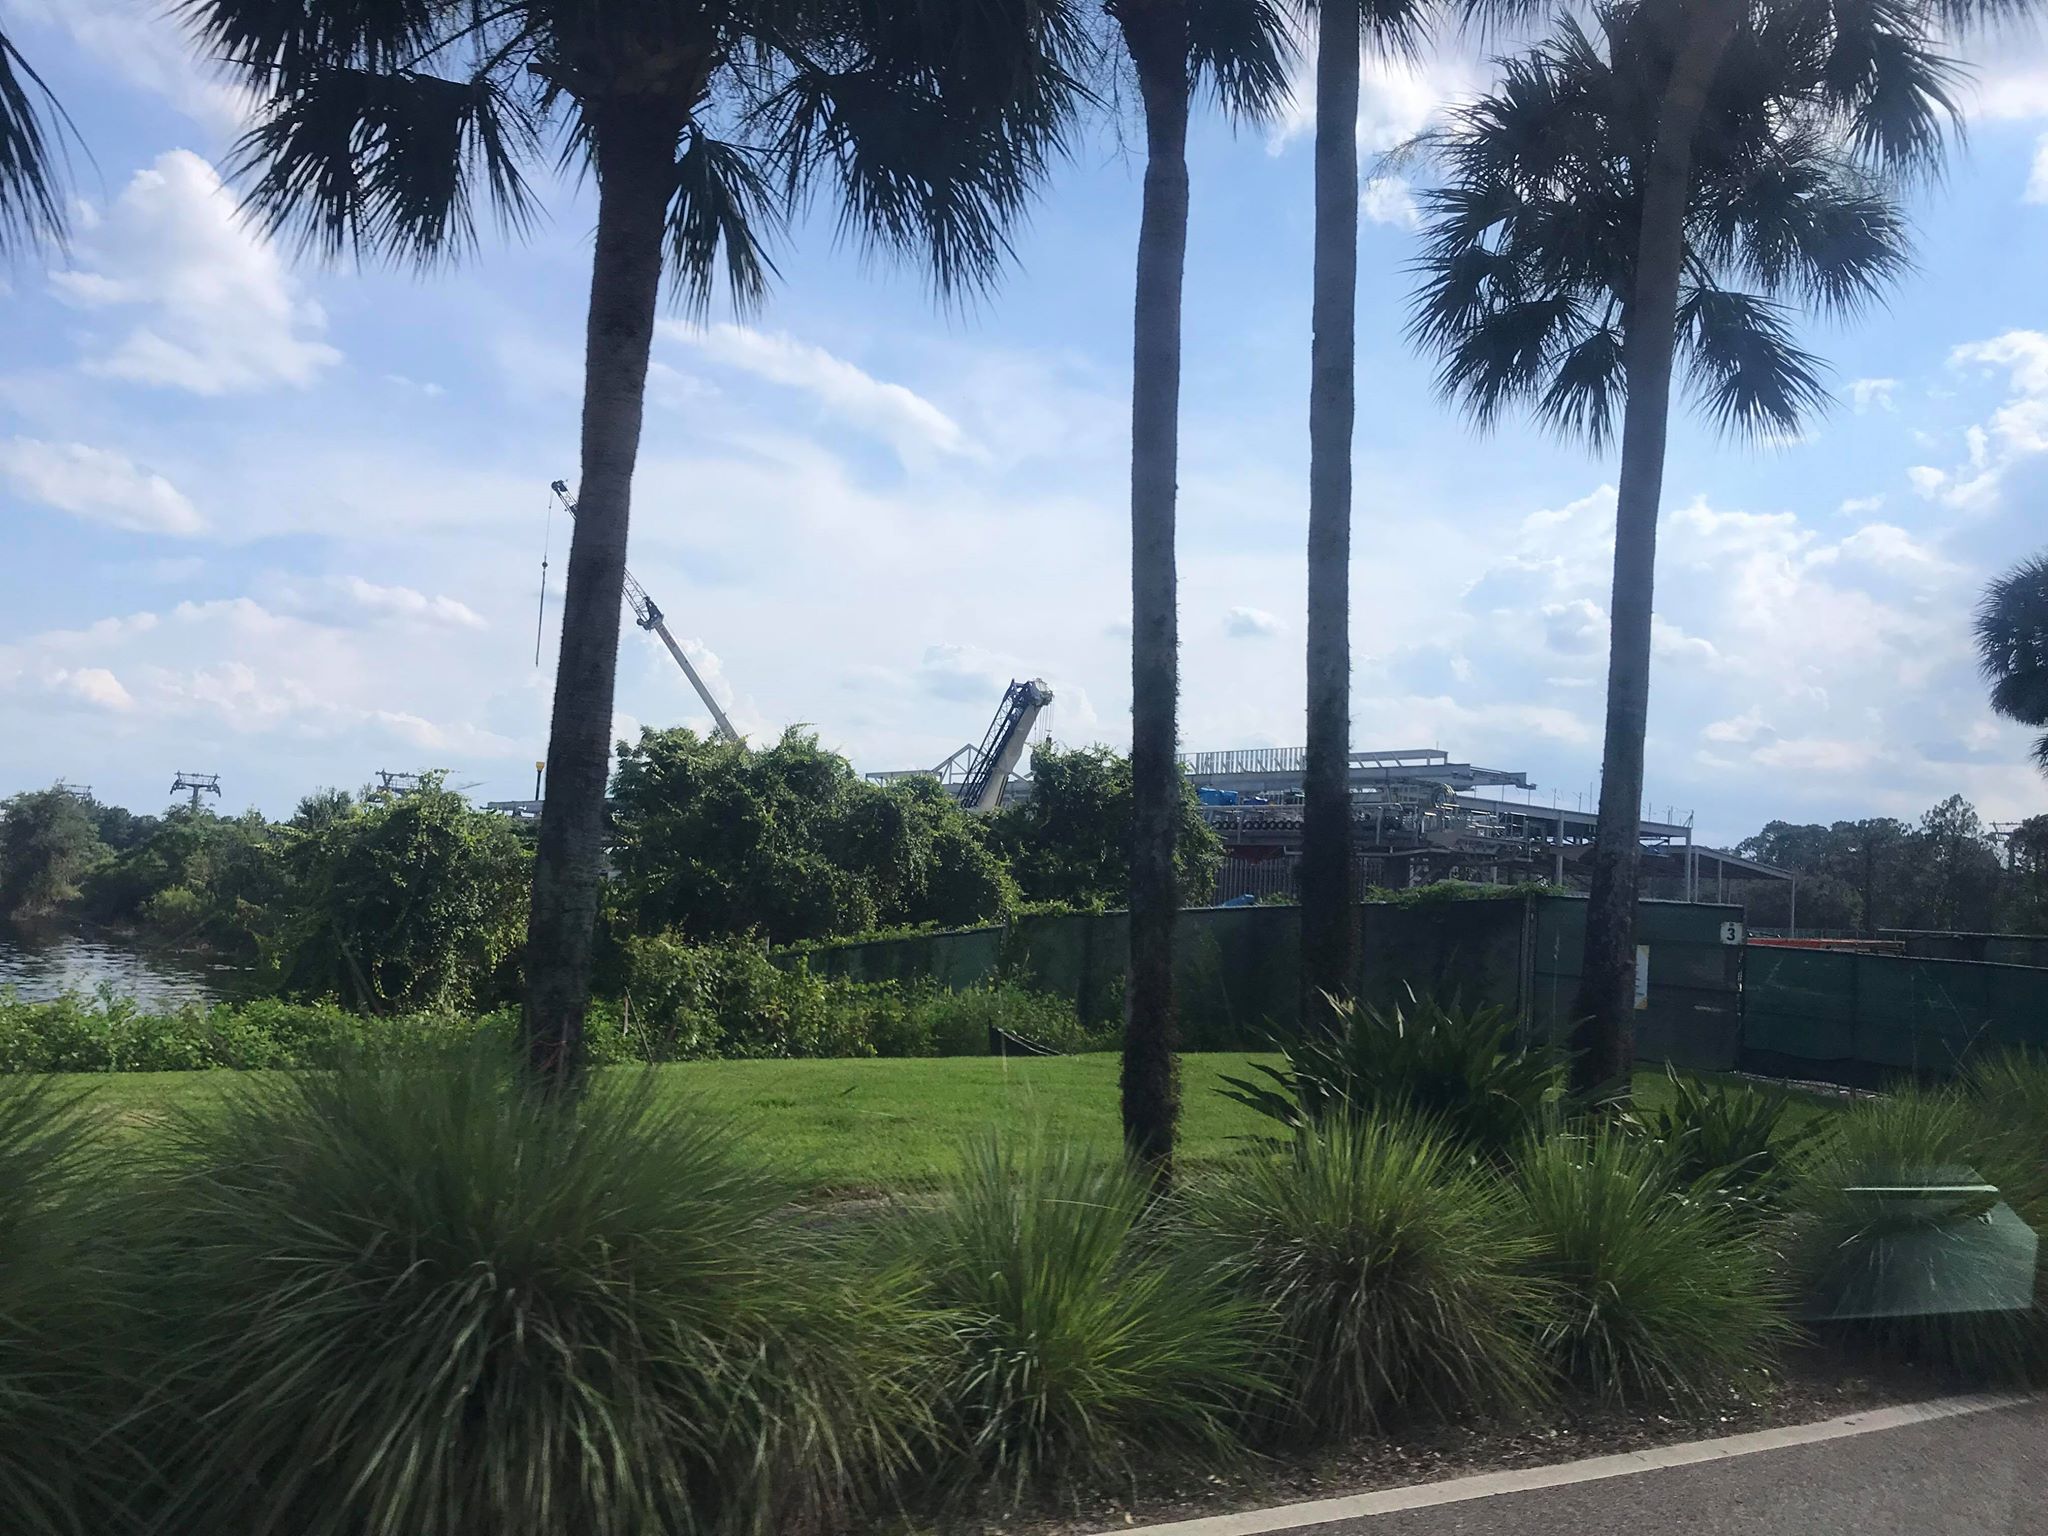 Update: Caribbean Beach Skyliner Construction Photos